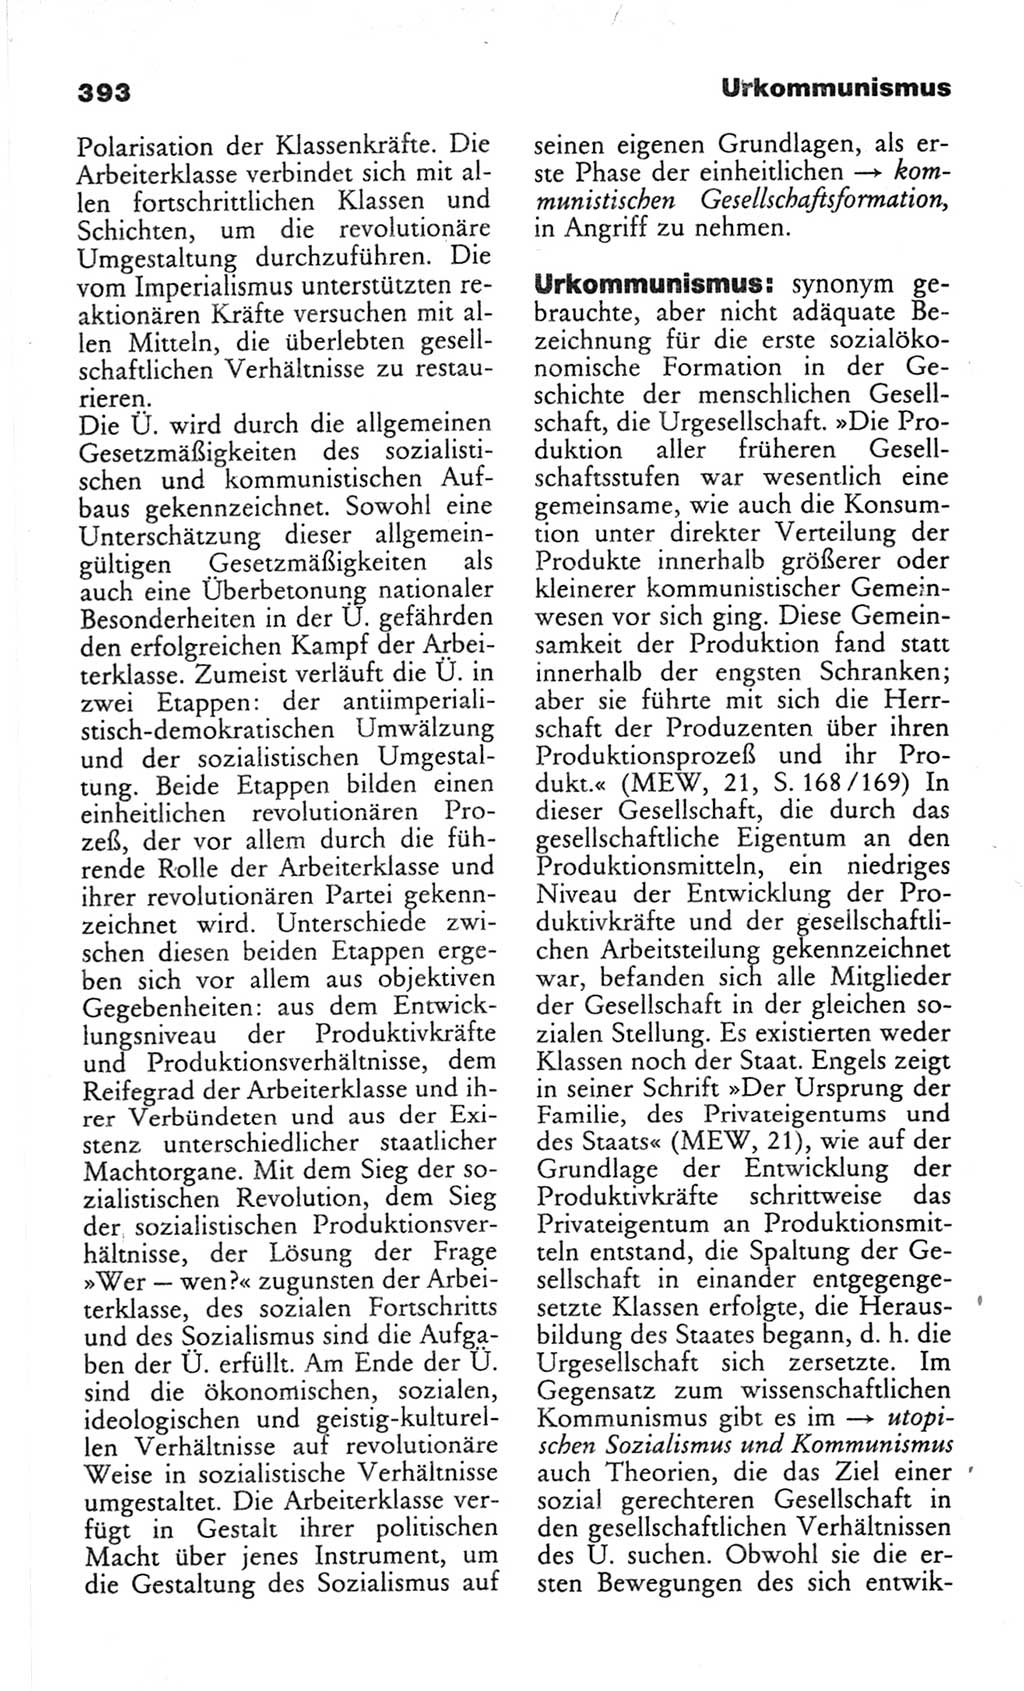 Wörterbuch des wissenschaftlichen Kommunismus [Deutsche Demokratische Republik (DDR)] 1982, Seite 393 (Wb. wiss. Komm. DDR 1982, S. 393)